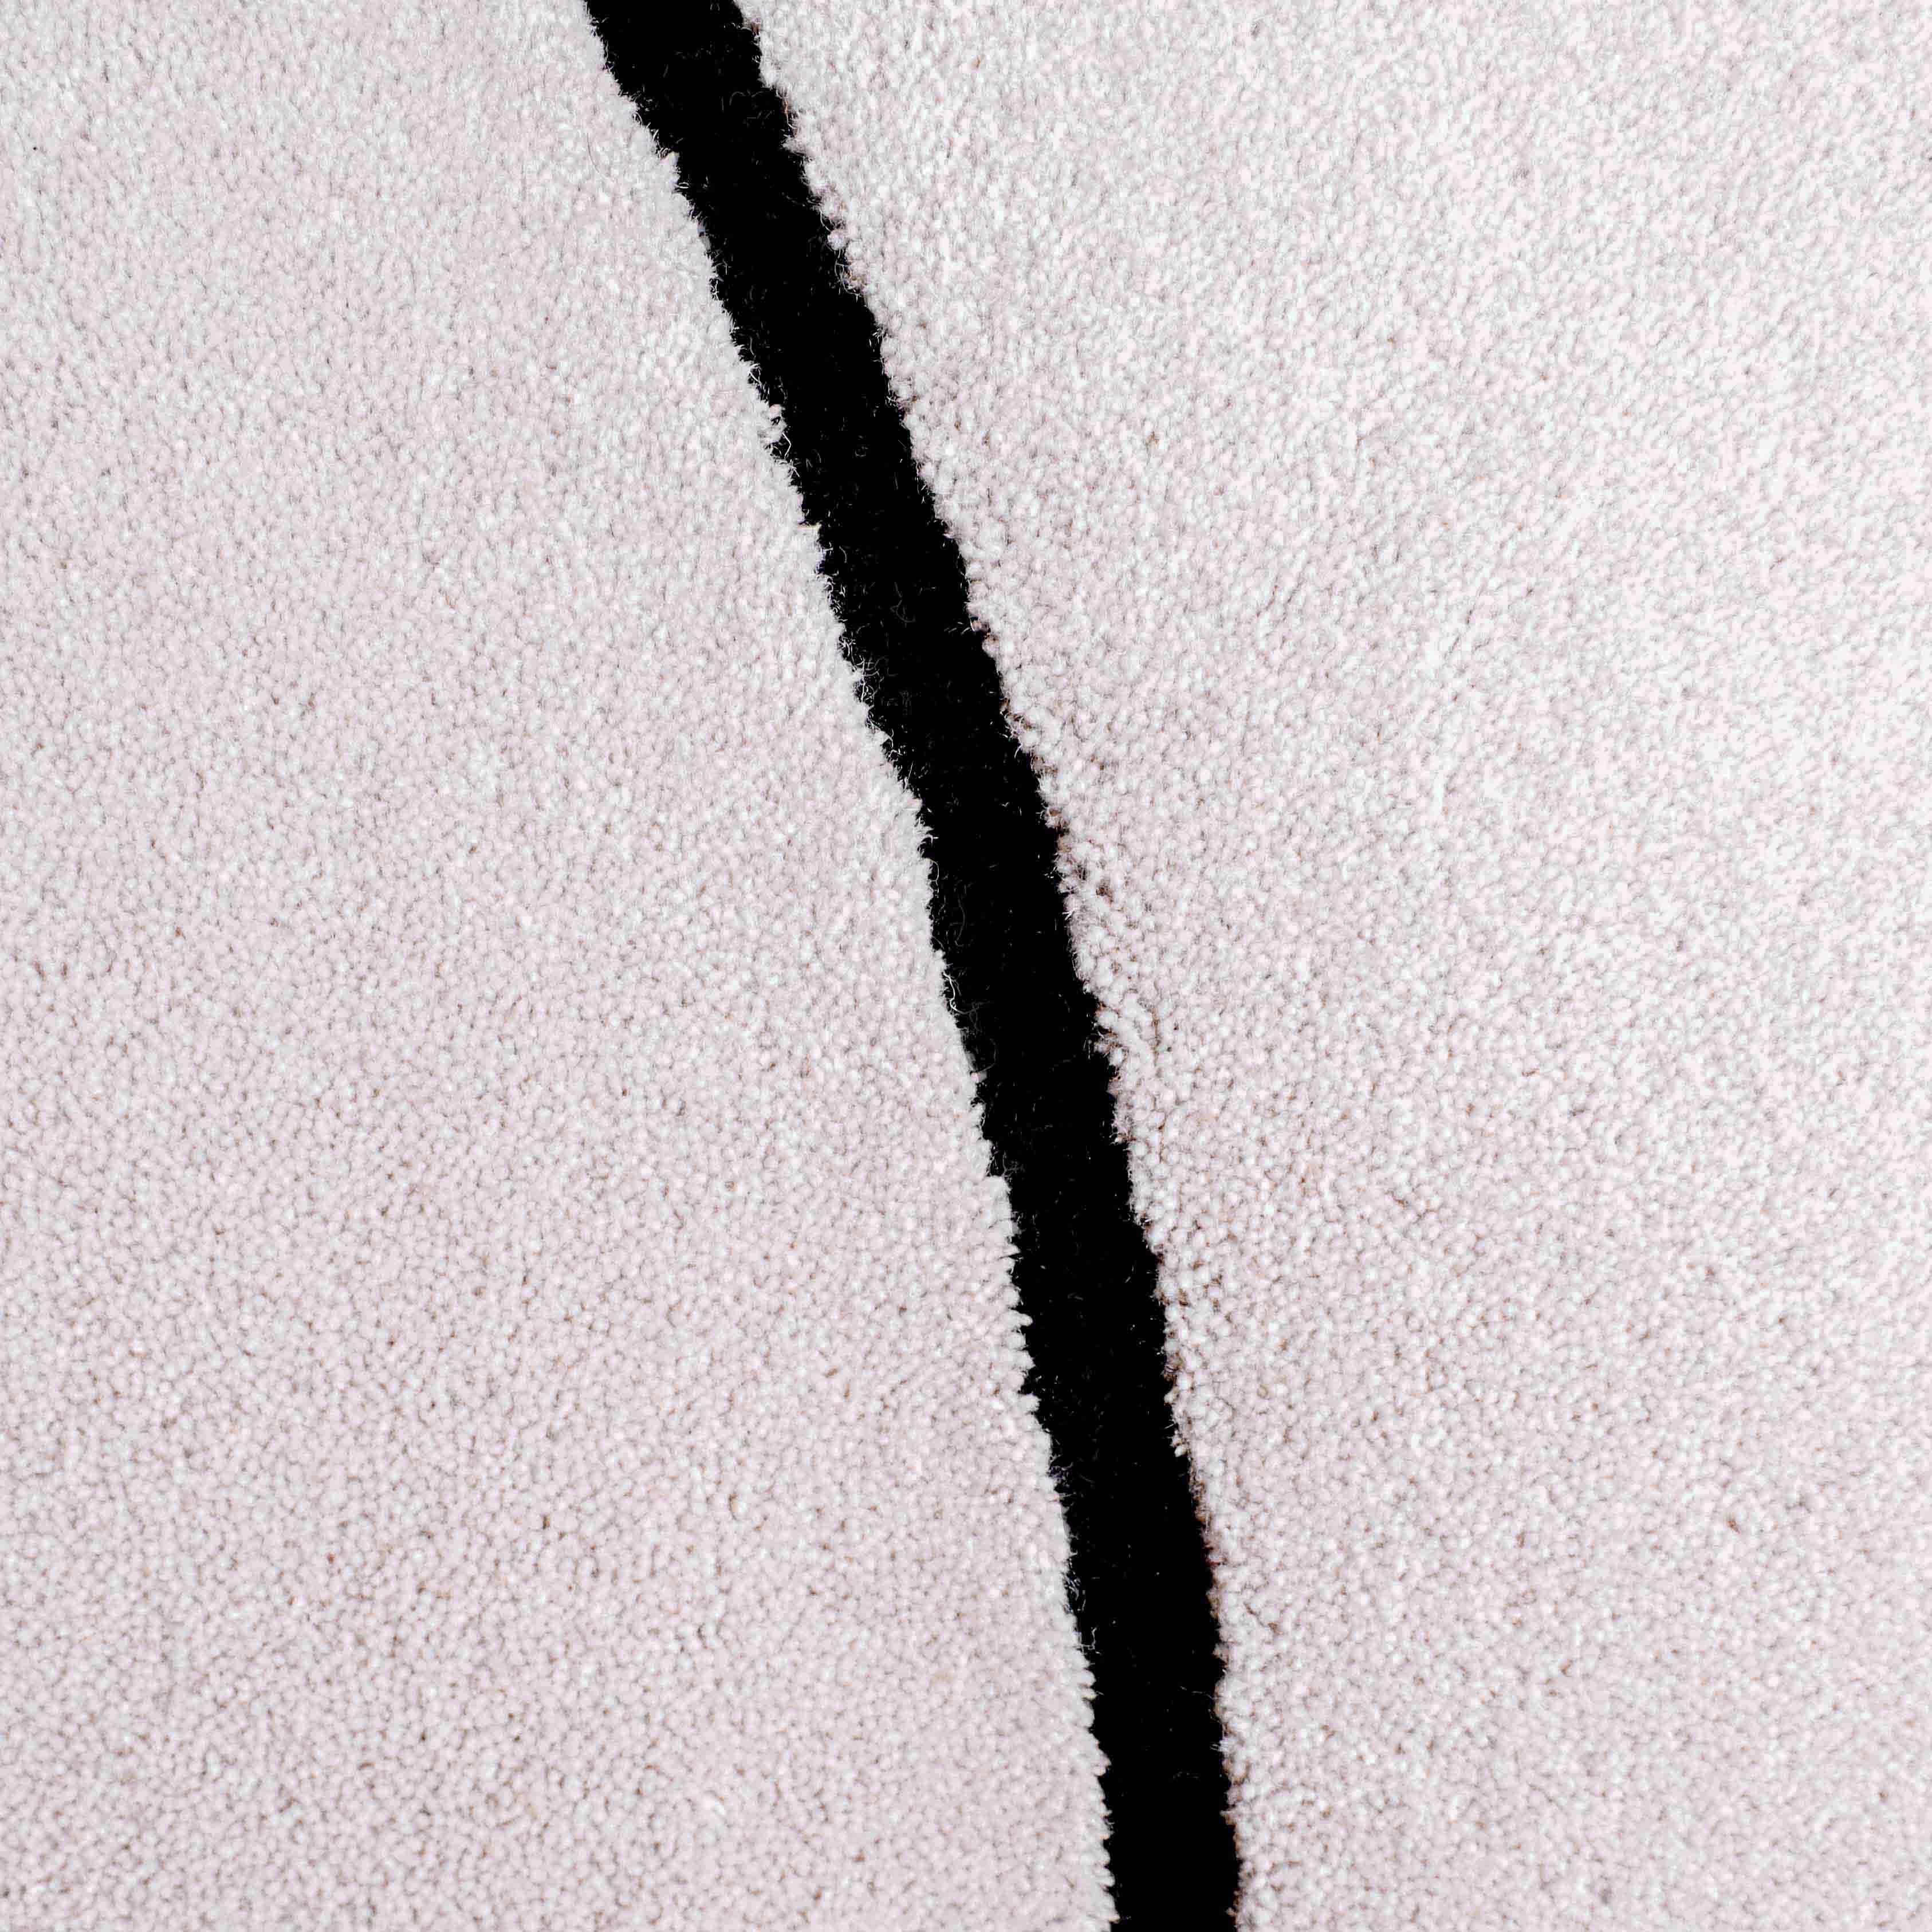 Cloud Gray Squiggle hat eine weiche Wolloberfläche. 

Größe:  7 x 10 ft 
MATERIAL: Wolle
Farbe: Hellgrau* + Schwarz
Hergestellt in Schweden
*Farben können aufgrund von Beleuchtung und Fotografie variieren